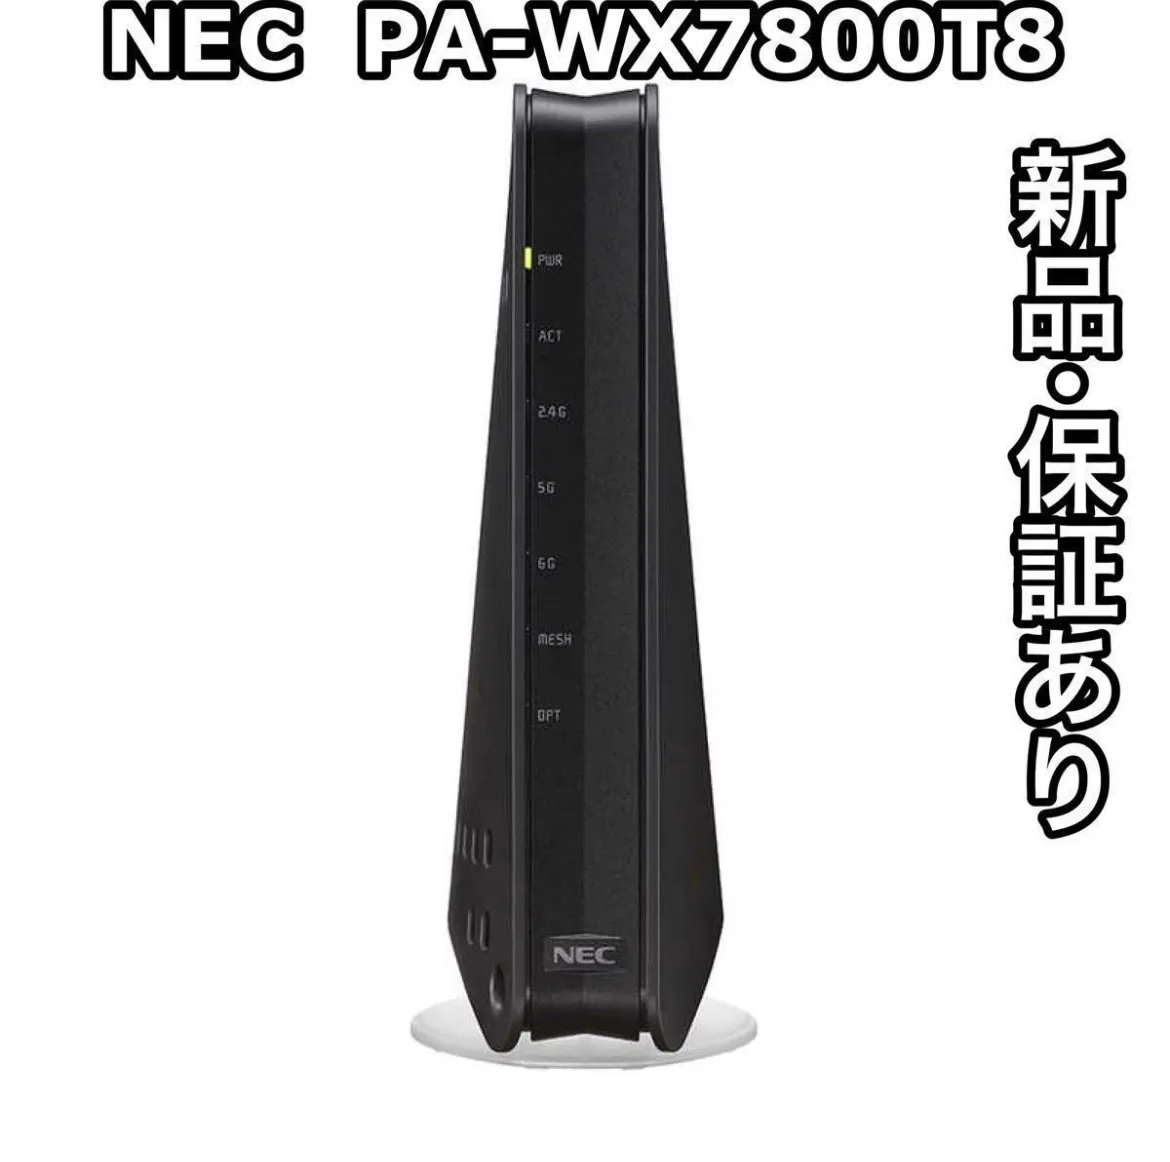 NEC 無線LANルーター Aterm PA-WX7800T8 - PC周辺機器